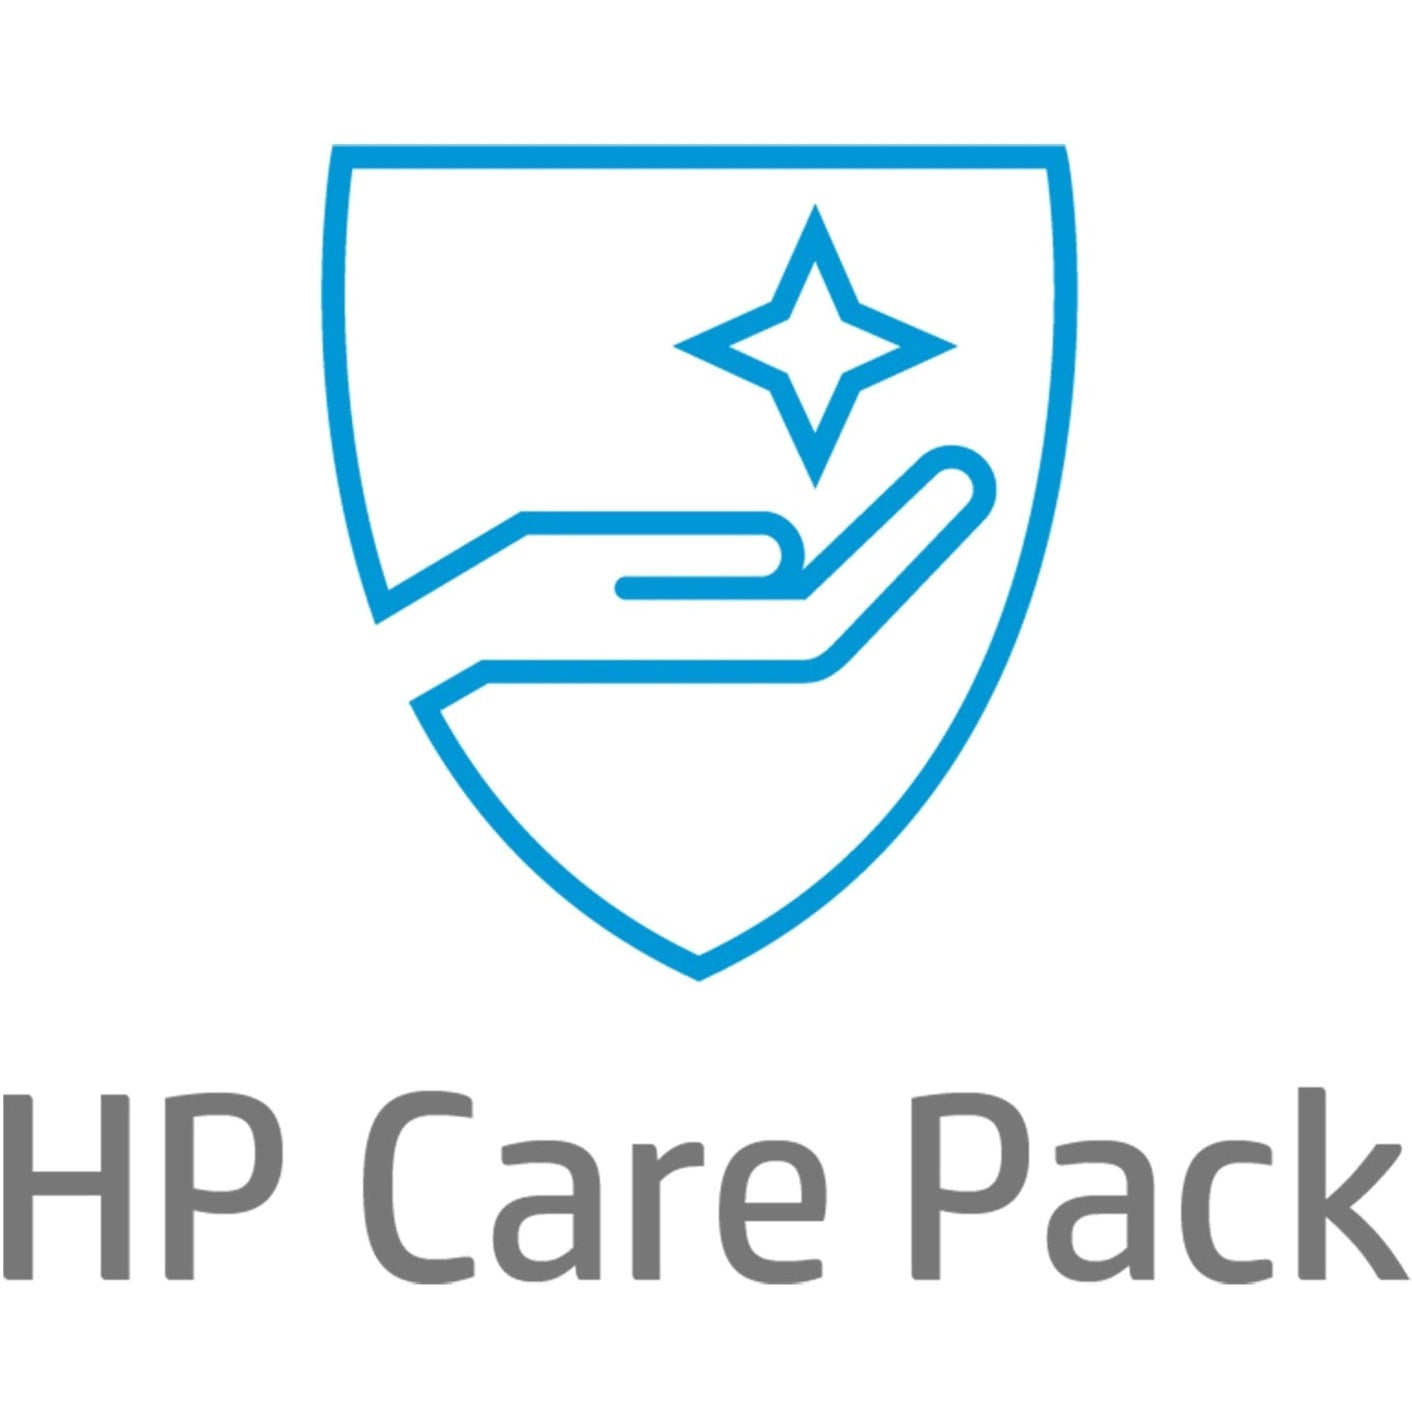 HP Care Pack - 3 Year - Service (U4810E)